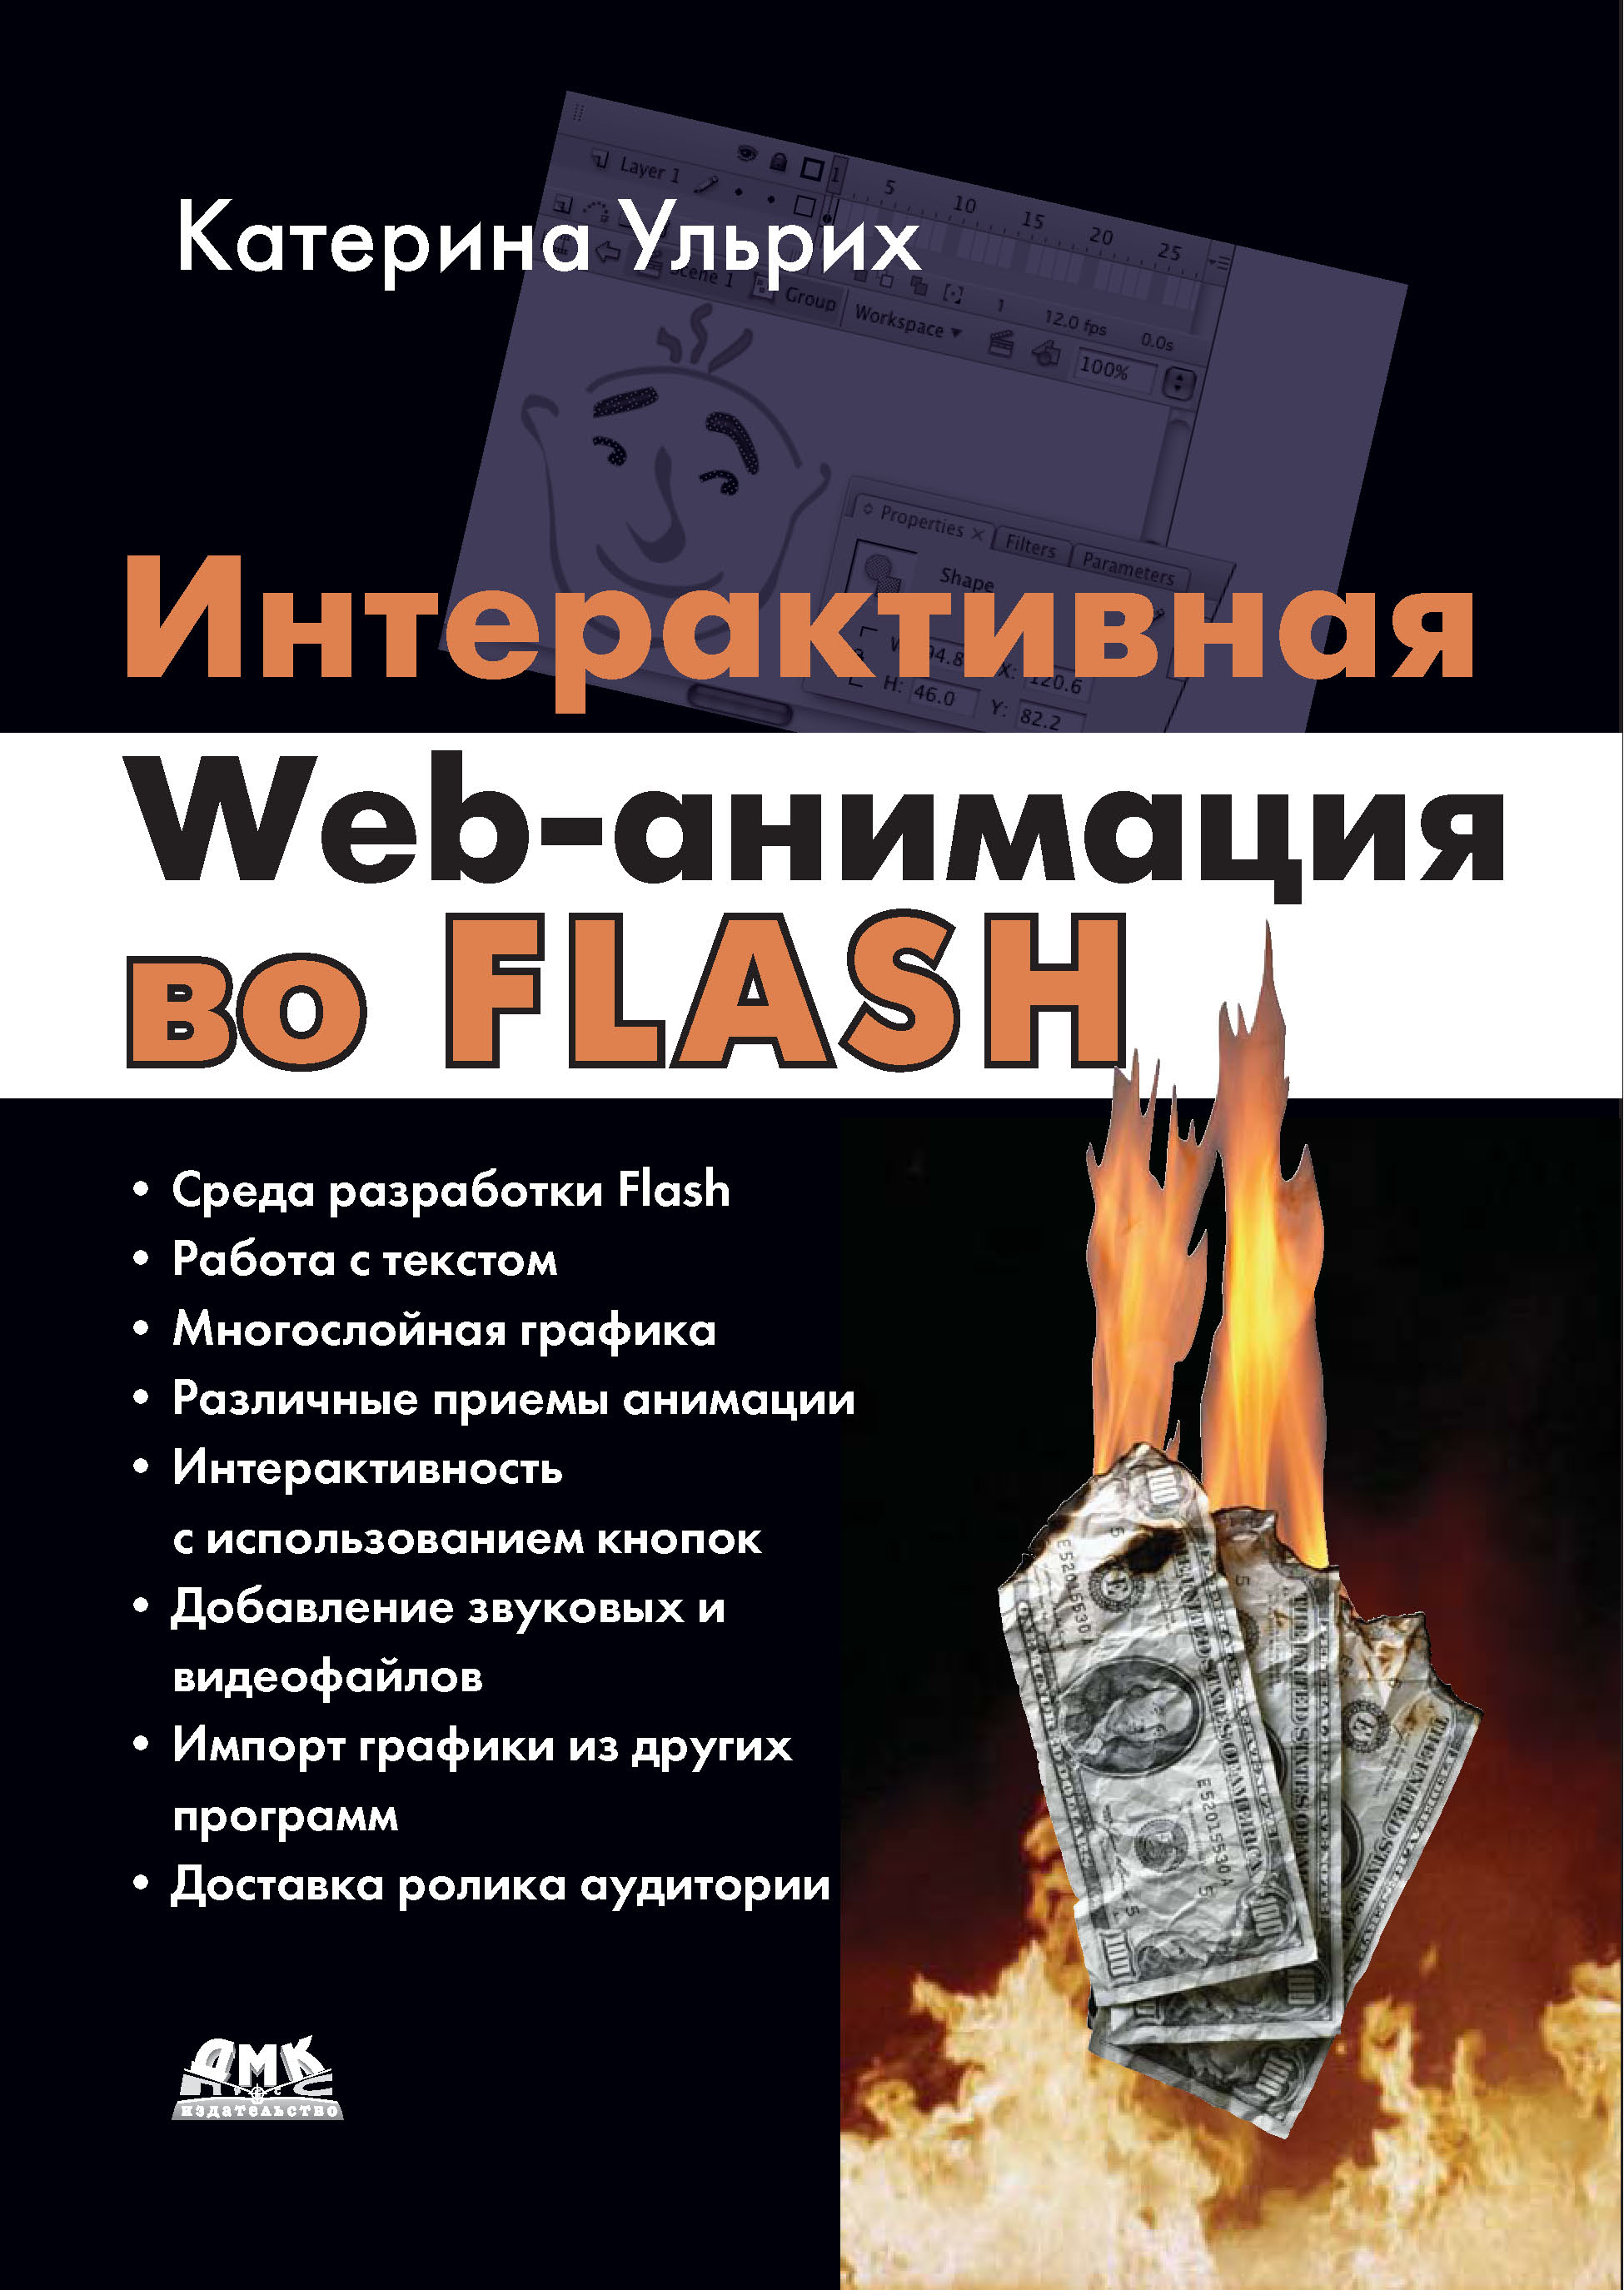 Книга  Интерактивная Web-анимация во Flash созданная Кетрин Ульрих, А. А. Слинкин может относится к жанру зарубежная компьютерная литература, зарубежная справочная литература, интернет, программирование, программы, руководства. Стоимость электронной книги Интерактивная Web-анимация во Flash с идентификатором 6283722 составляет 399.00 руб.